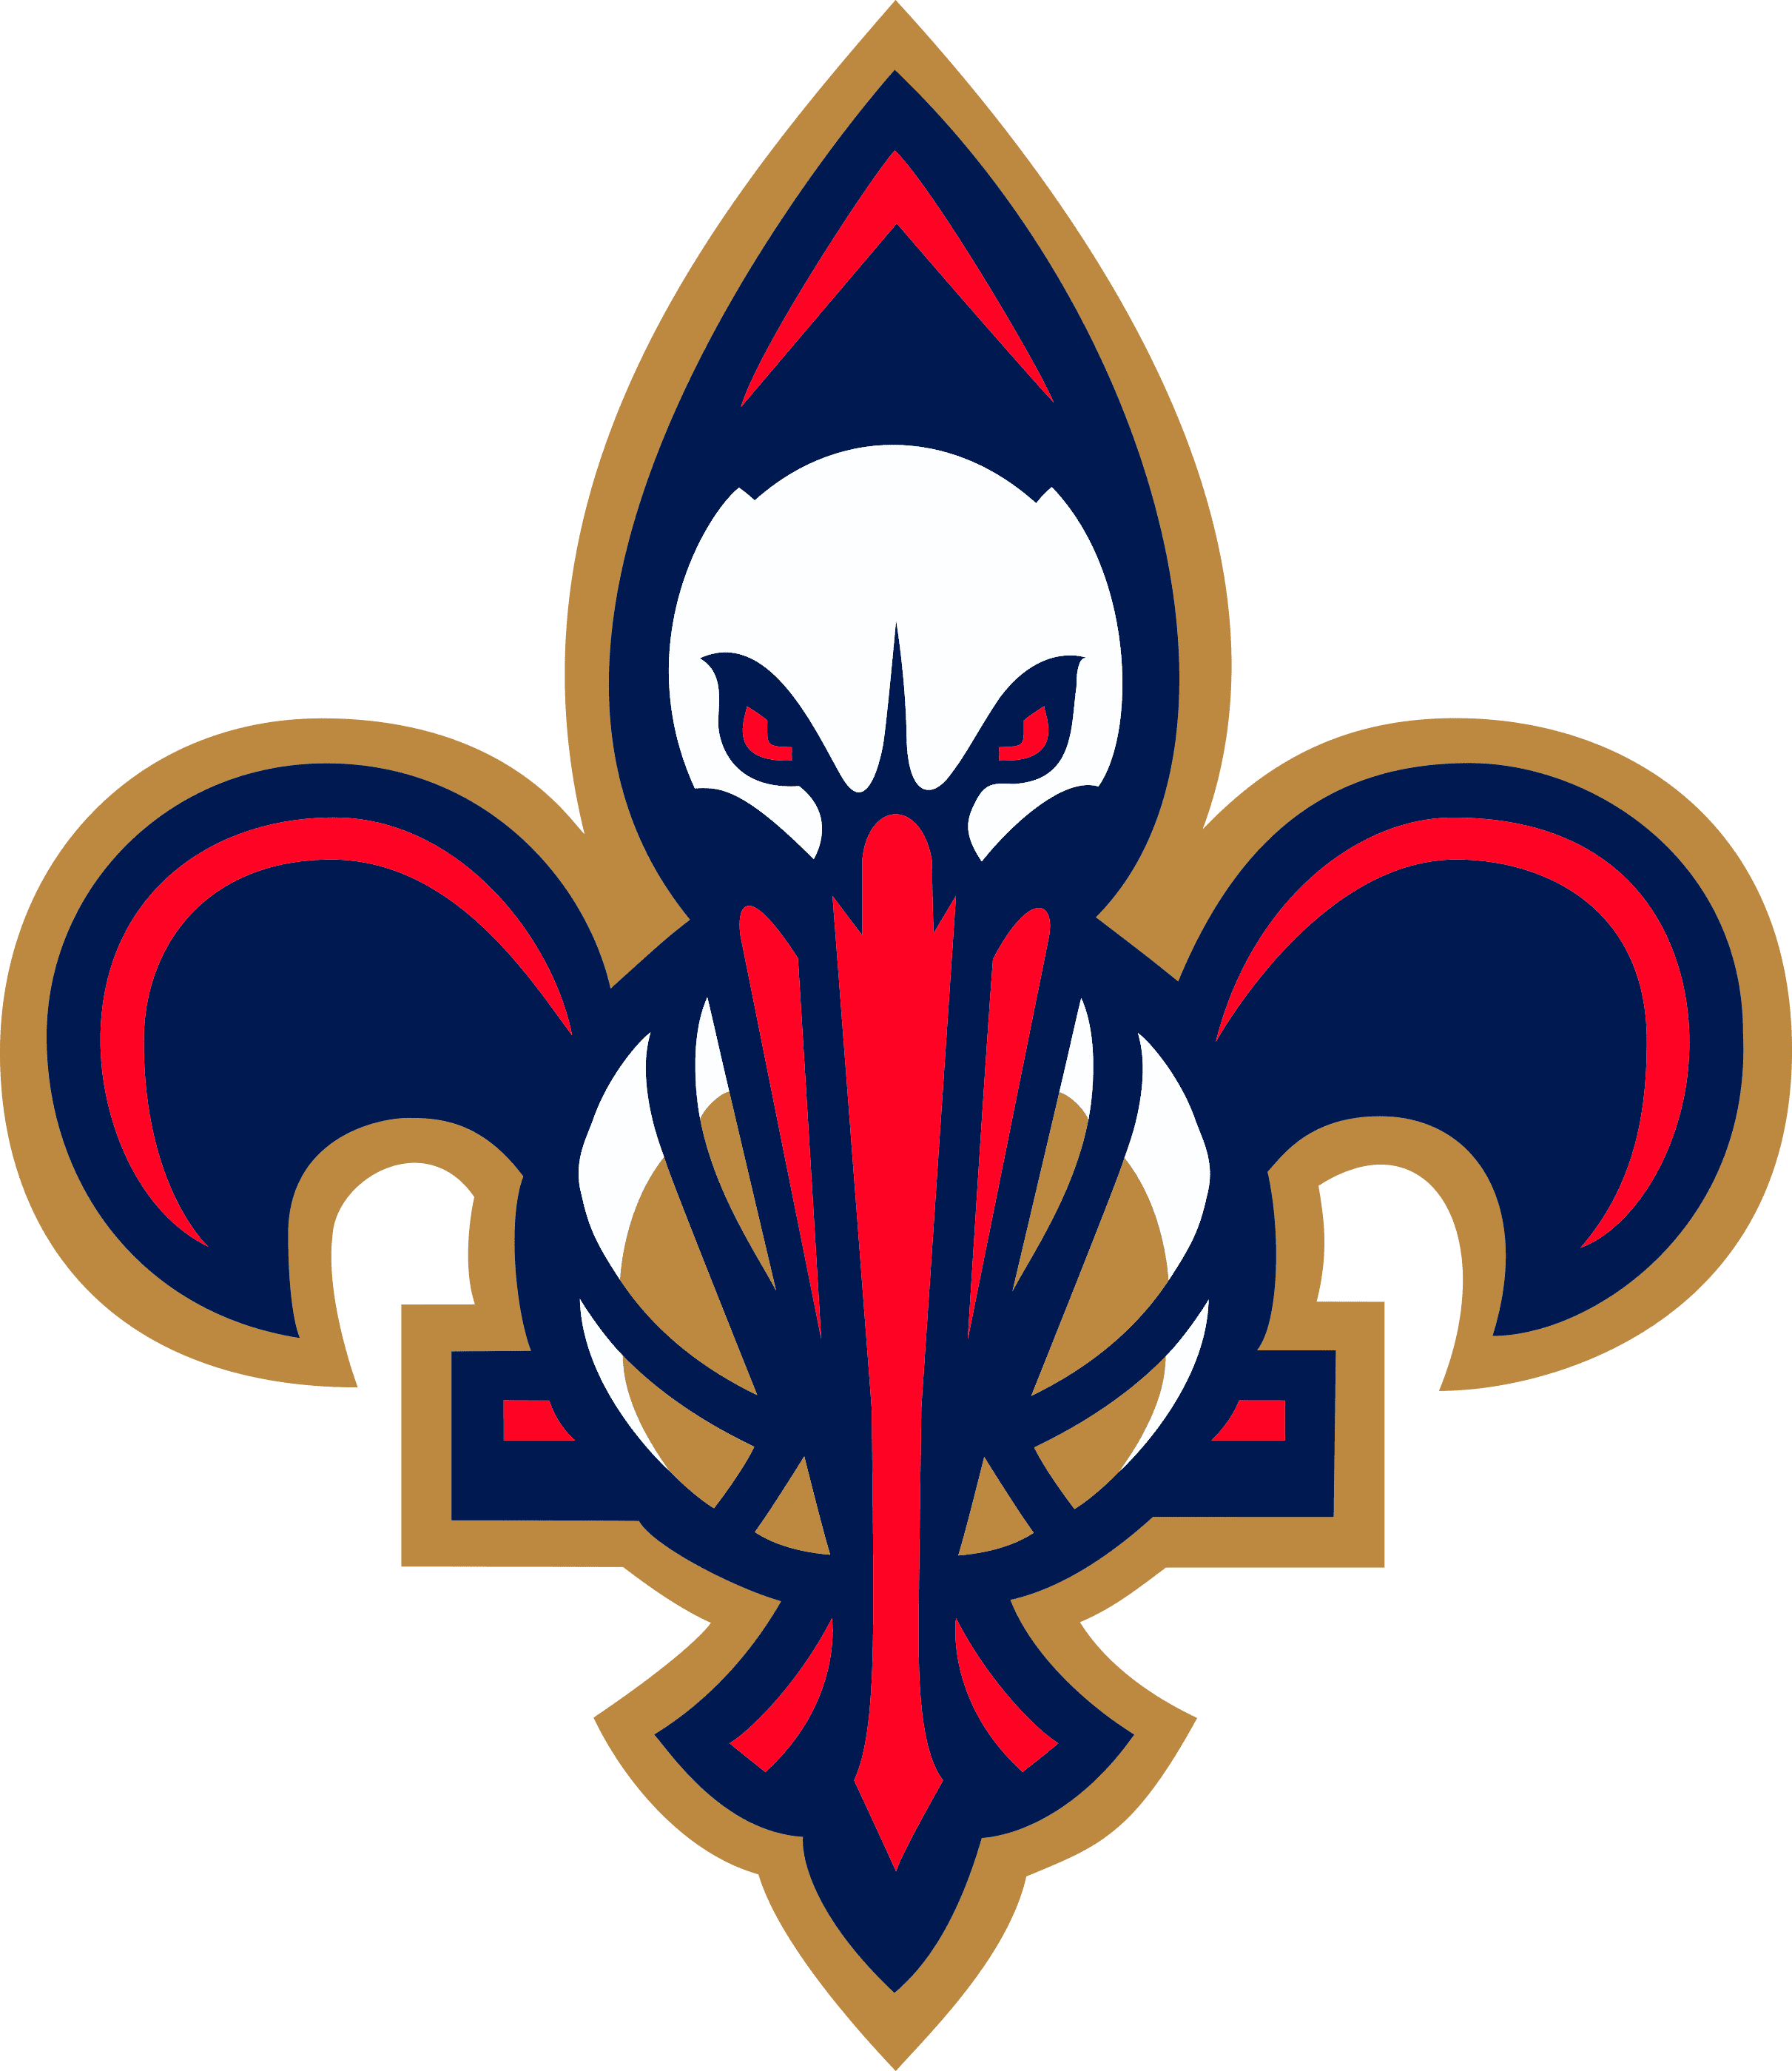 NBA New Orleans Pelicans Jibbitz™ PNG Images